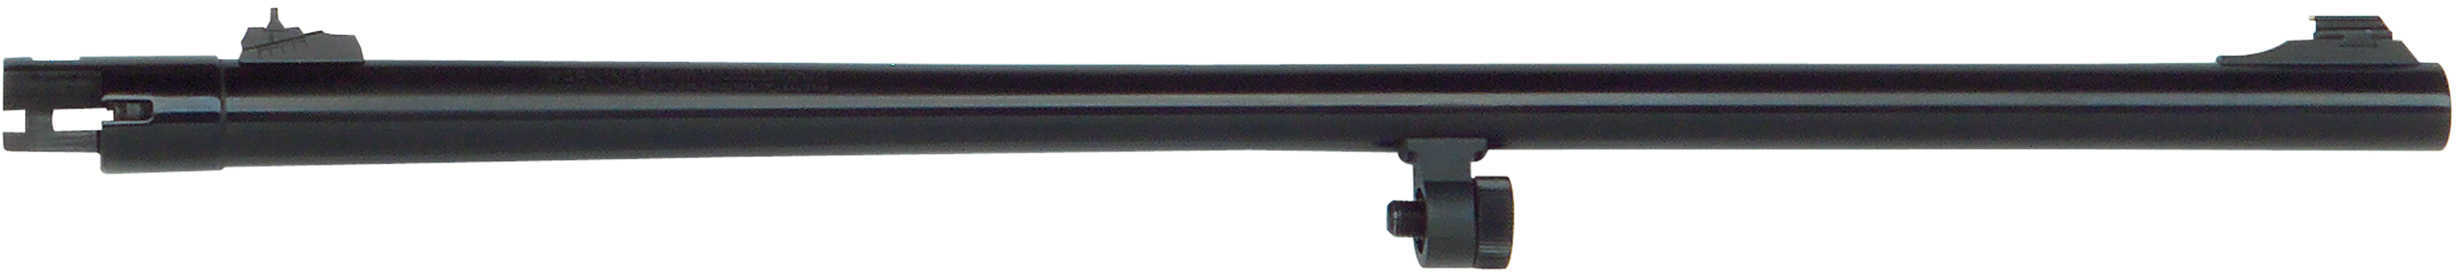 Mossberg 90120 500 12 Gauge 24" Blued Adjustable Rifle